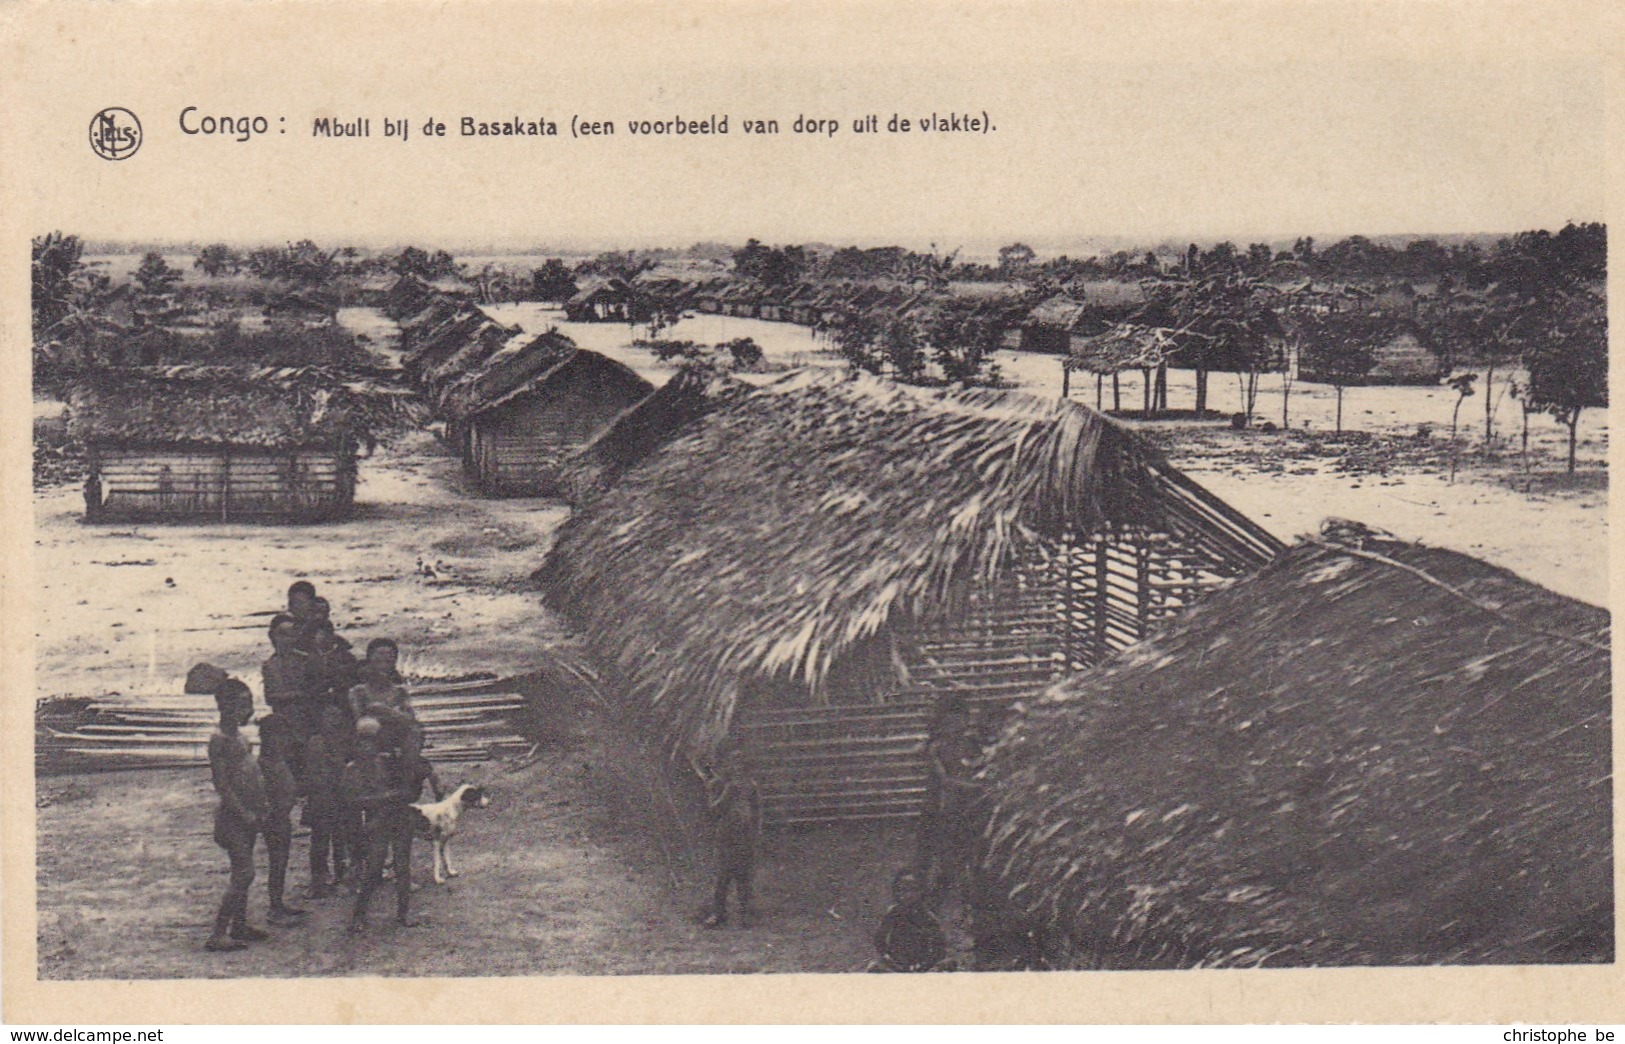 Congo, Mbull Bij De Basakala, Missiën Van Scheut (pk42643) - Missions